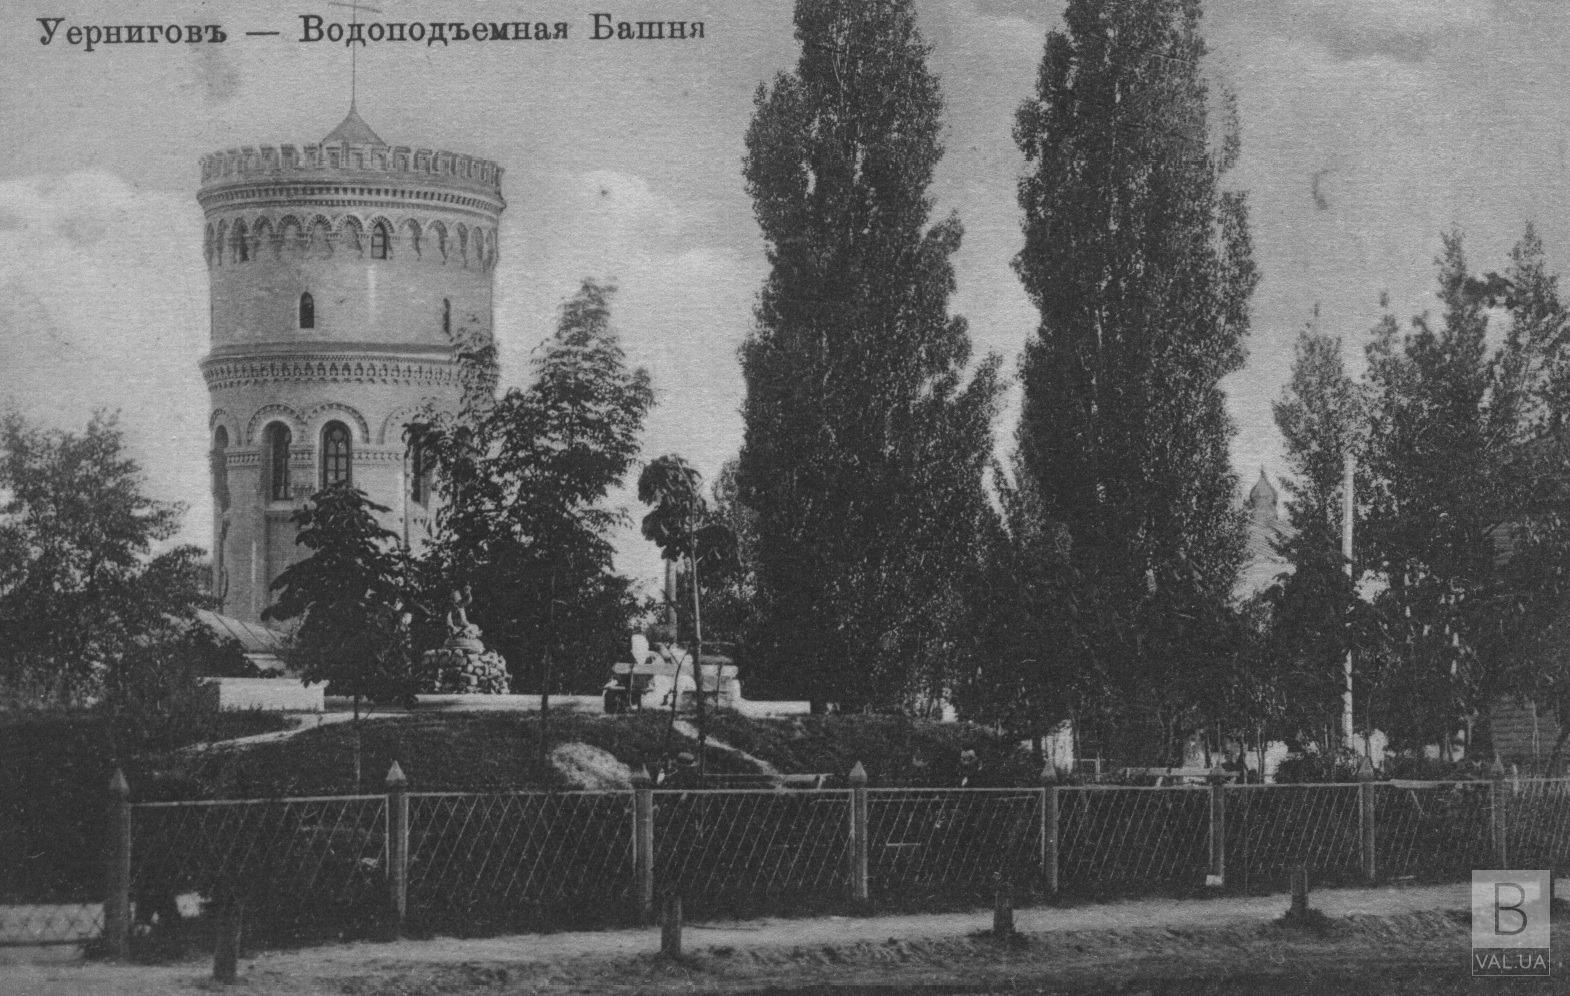 123 года назад в Чернигове была заложена водопроводная башня. ФОТО